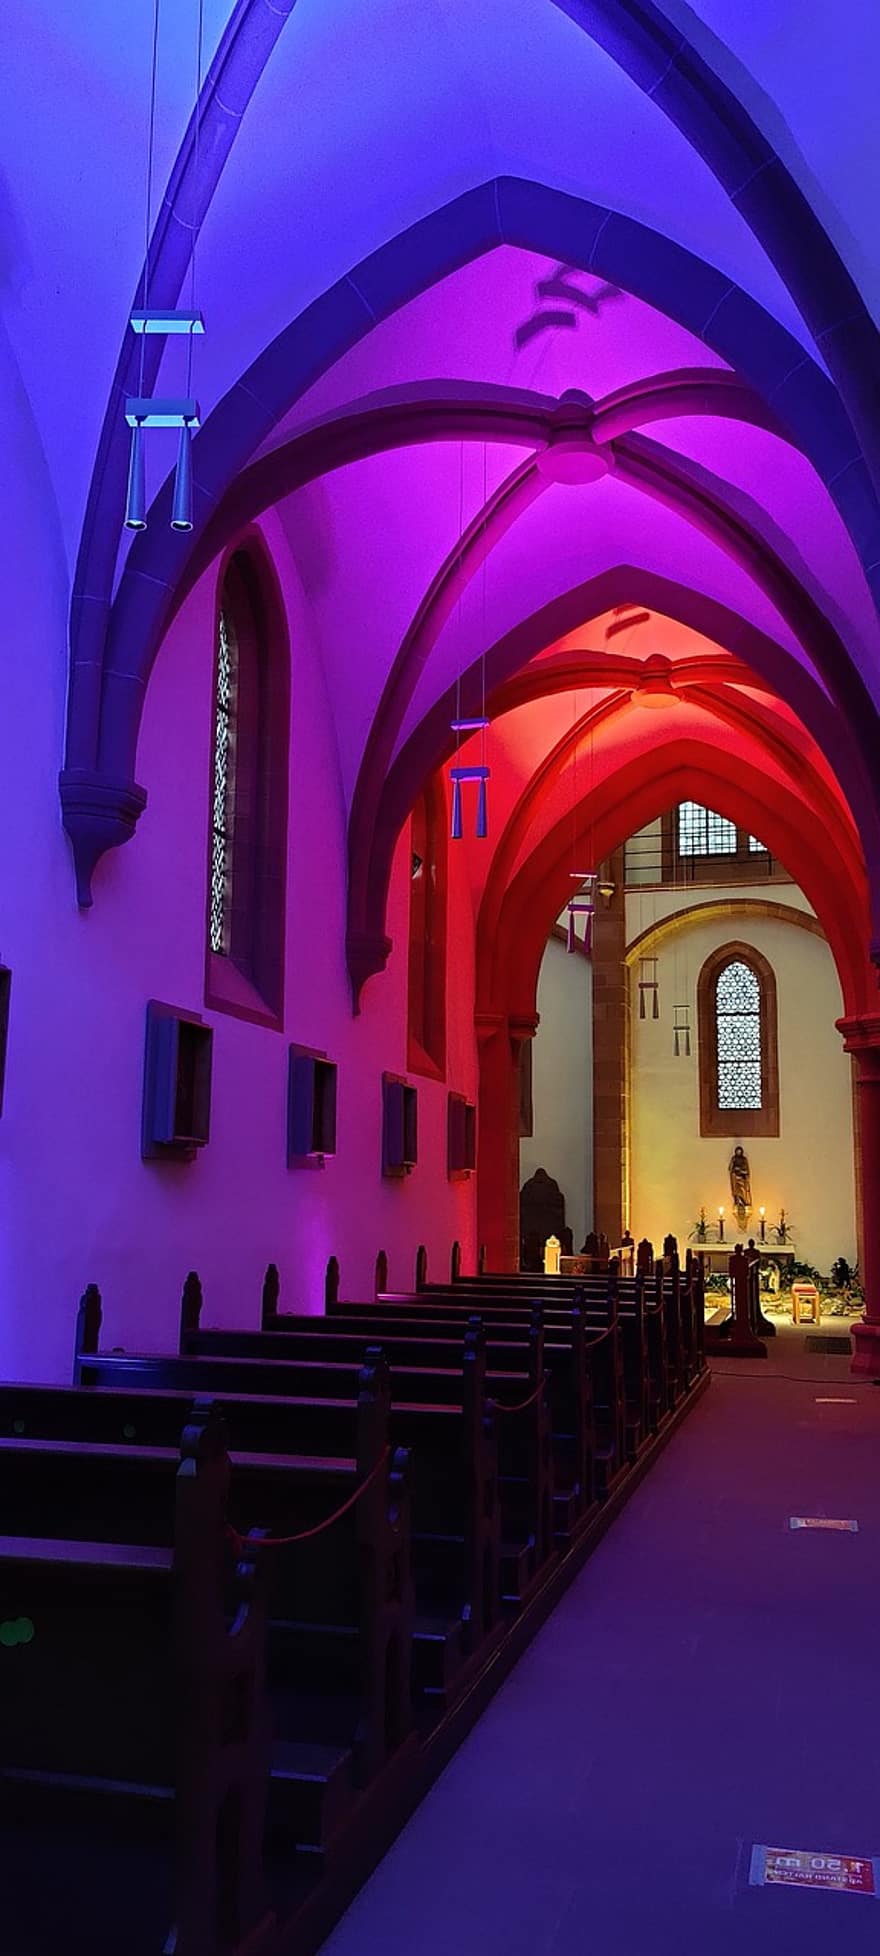 stiftskirche, Ollegiatskirche, die Architektur, Kirche, Religion, Beleuchtung, amöneburg